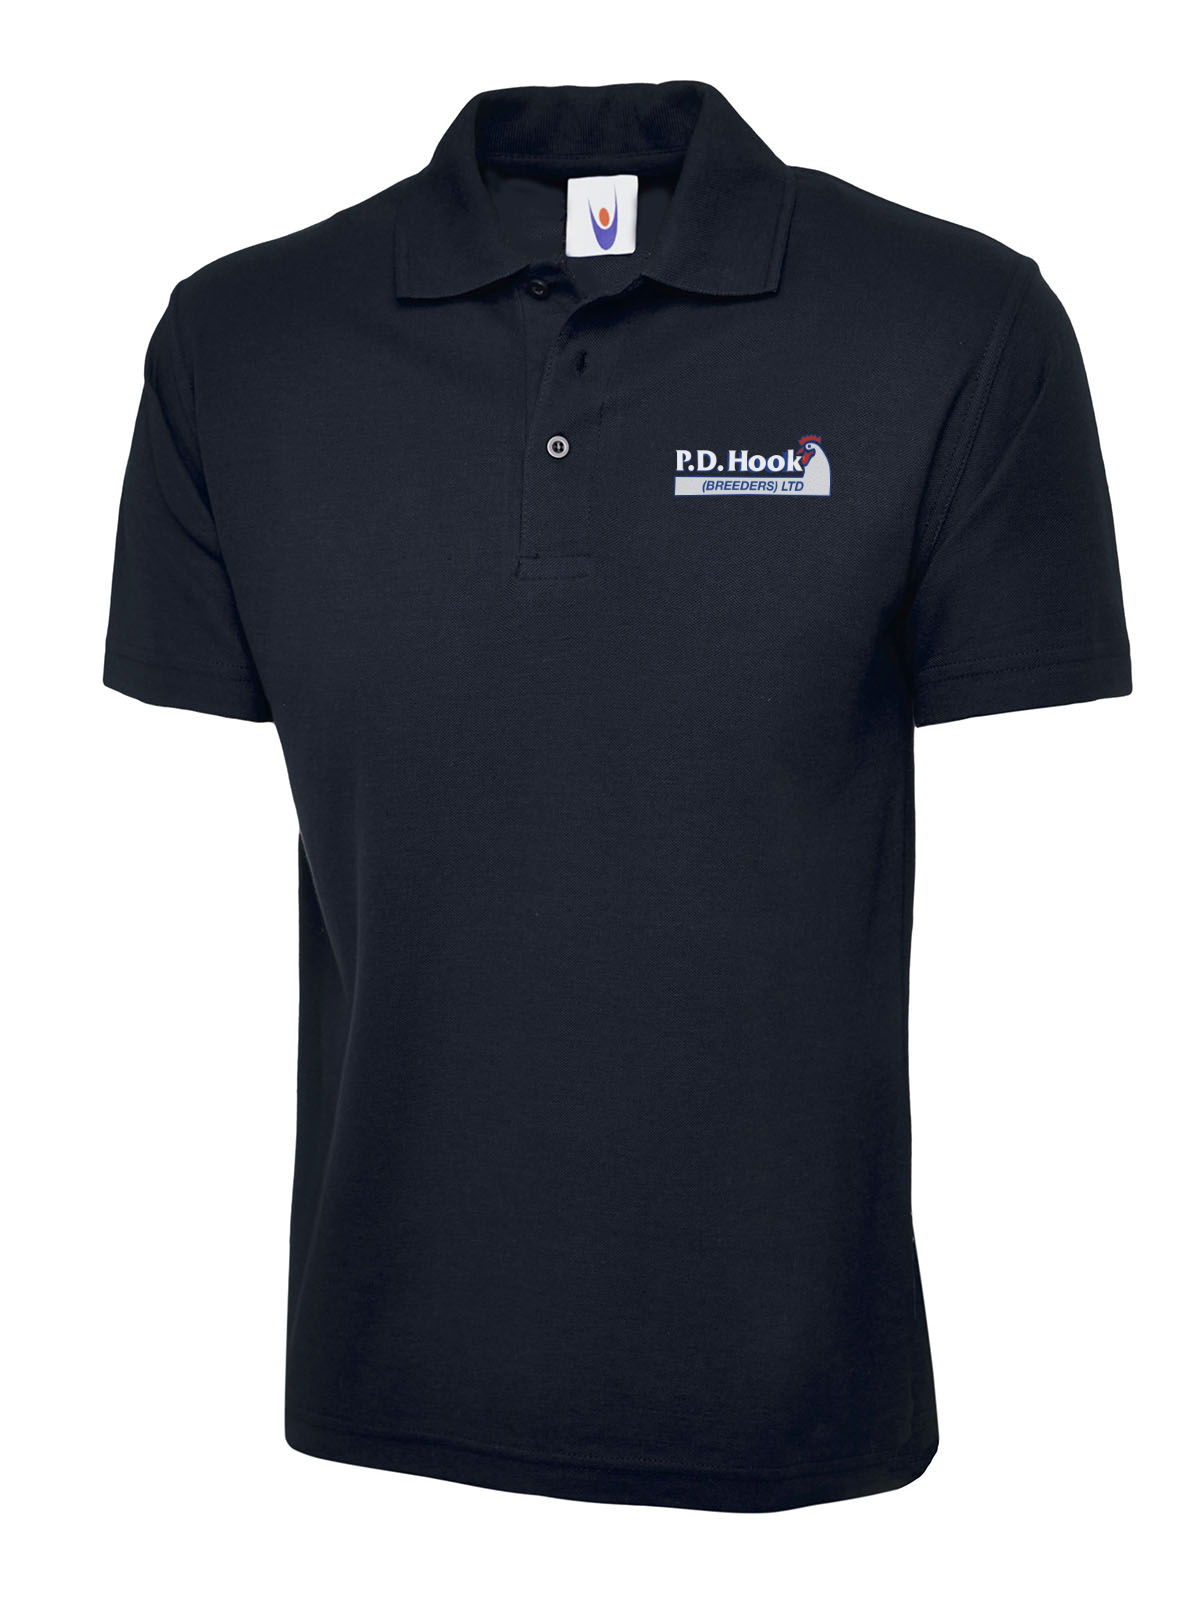 P D Hook (Breeders) Ltd - Poloshirt, Navy - Size 5XL